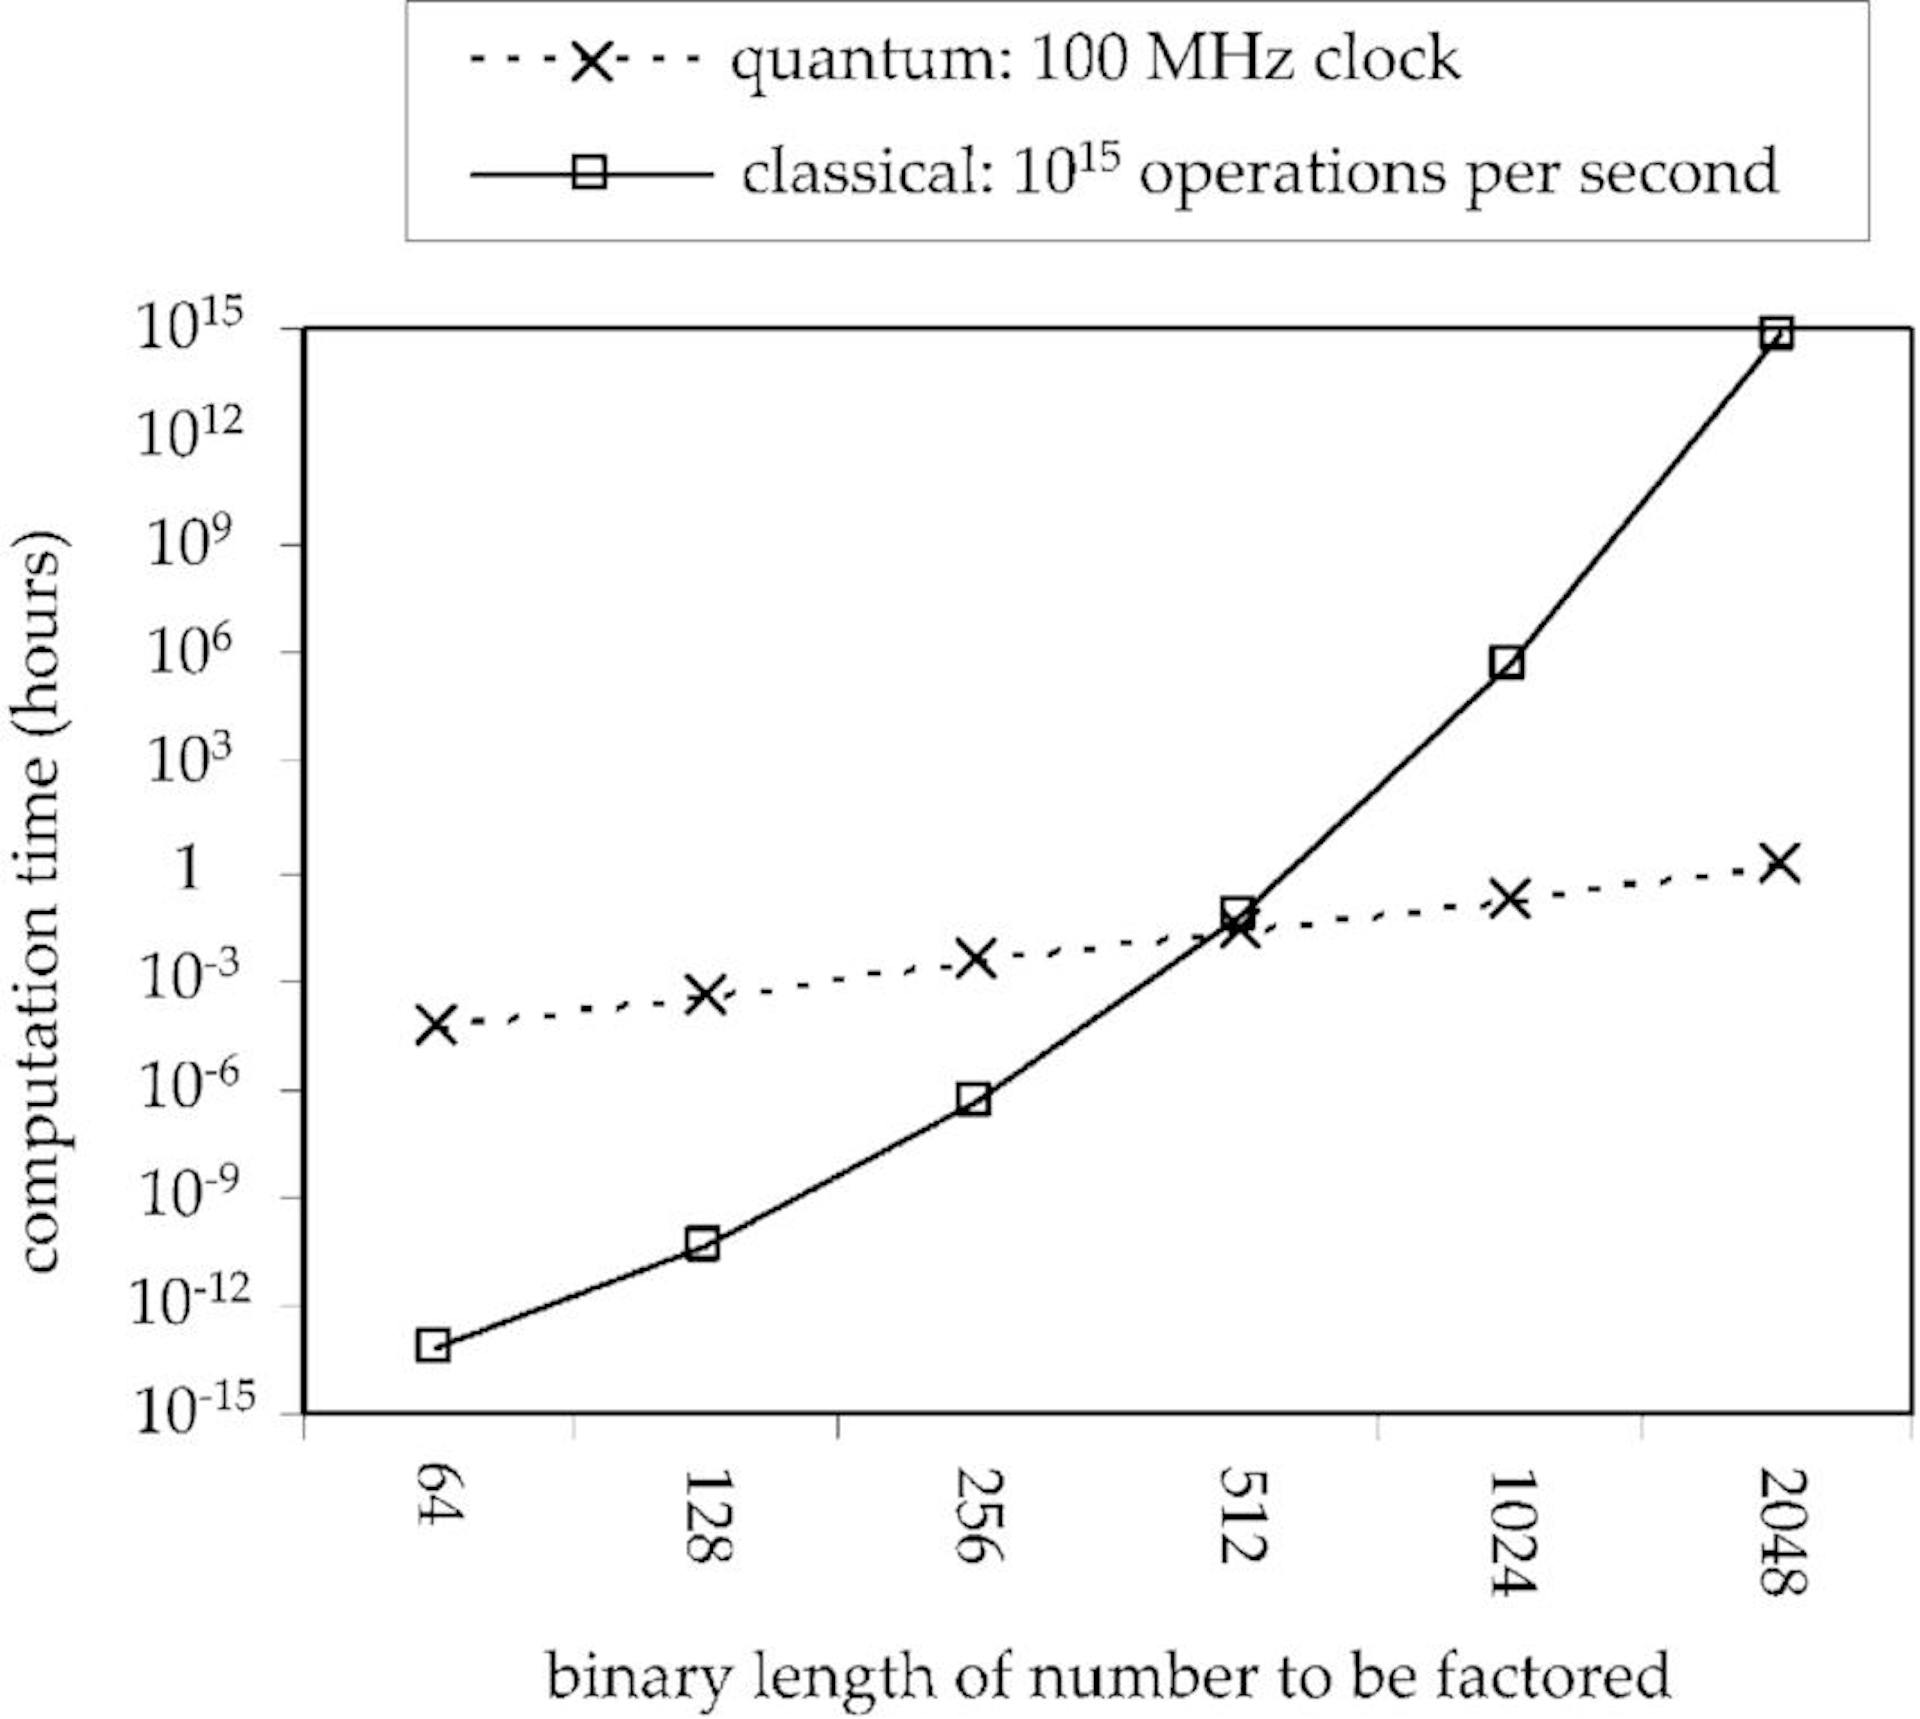 来源 - https://www.researchgate.net/figure/Comparison-of-estimated-computation-time-in-hours-for-the-problem-of-factoring-numbers-of_fig1_2986358